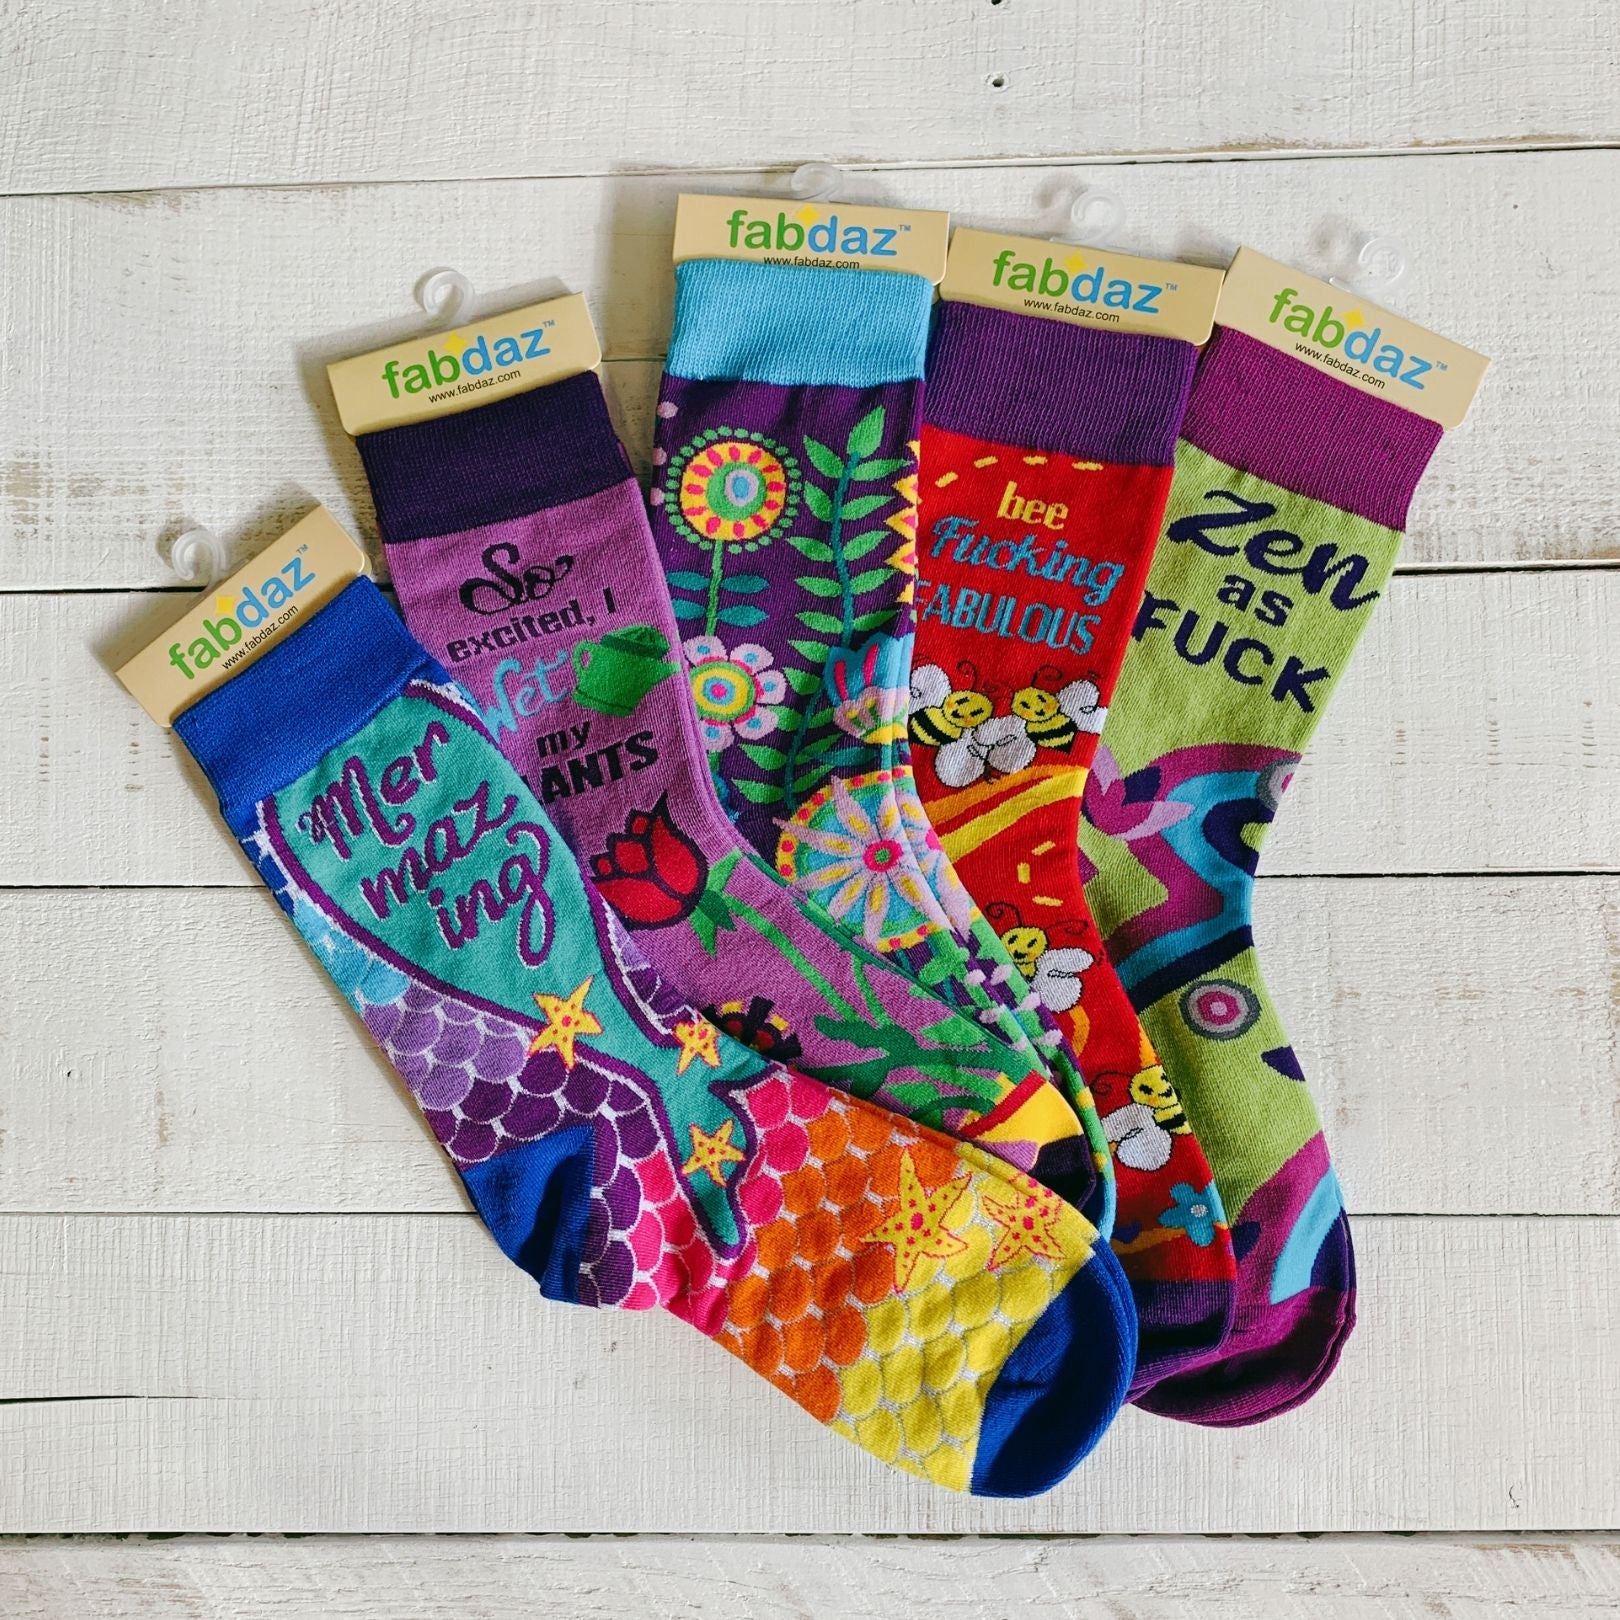 So Excited, I Wet my Plants Women's Crew Socks | Funny Novelty Socks